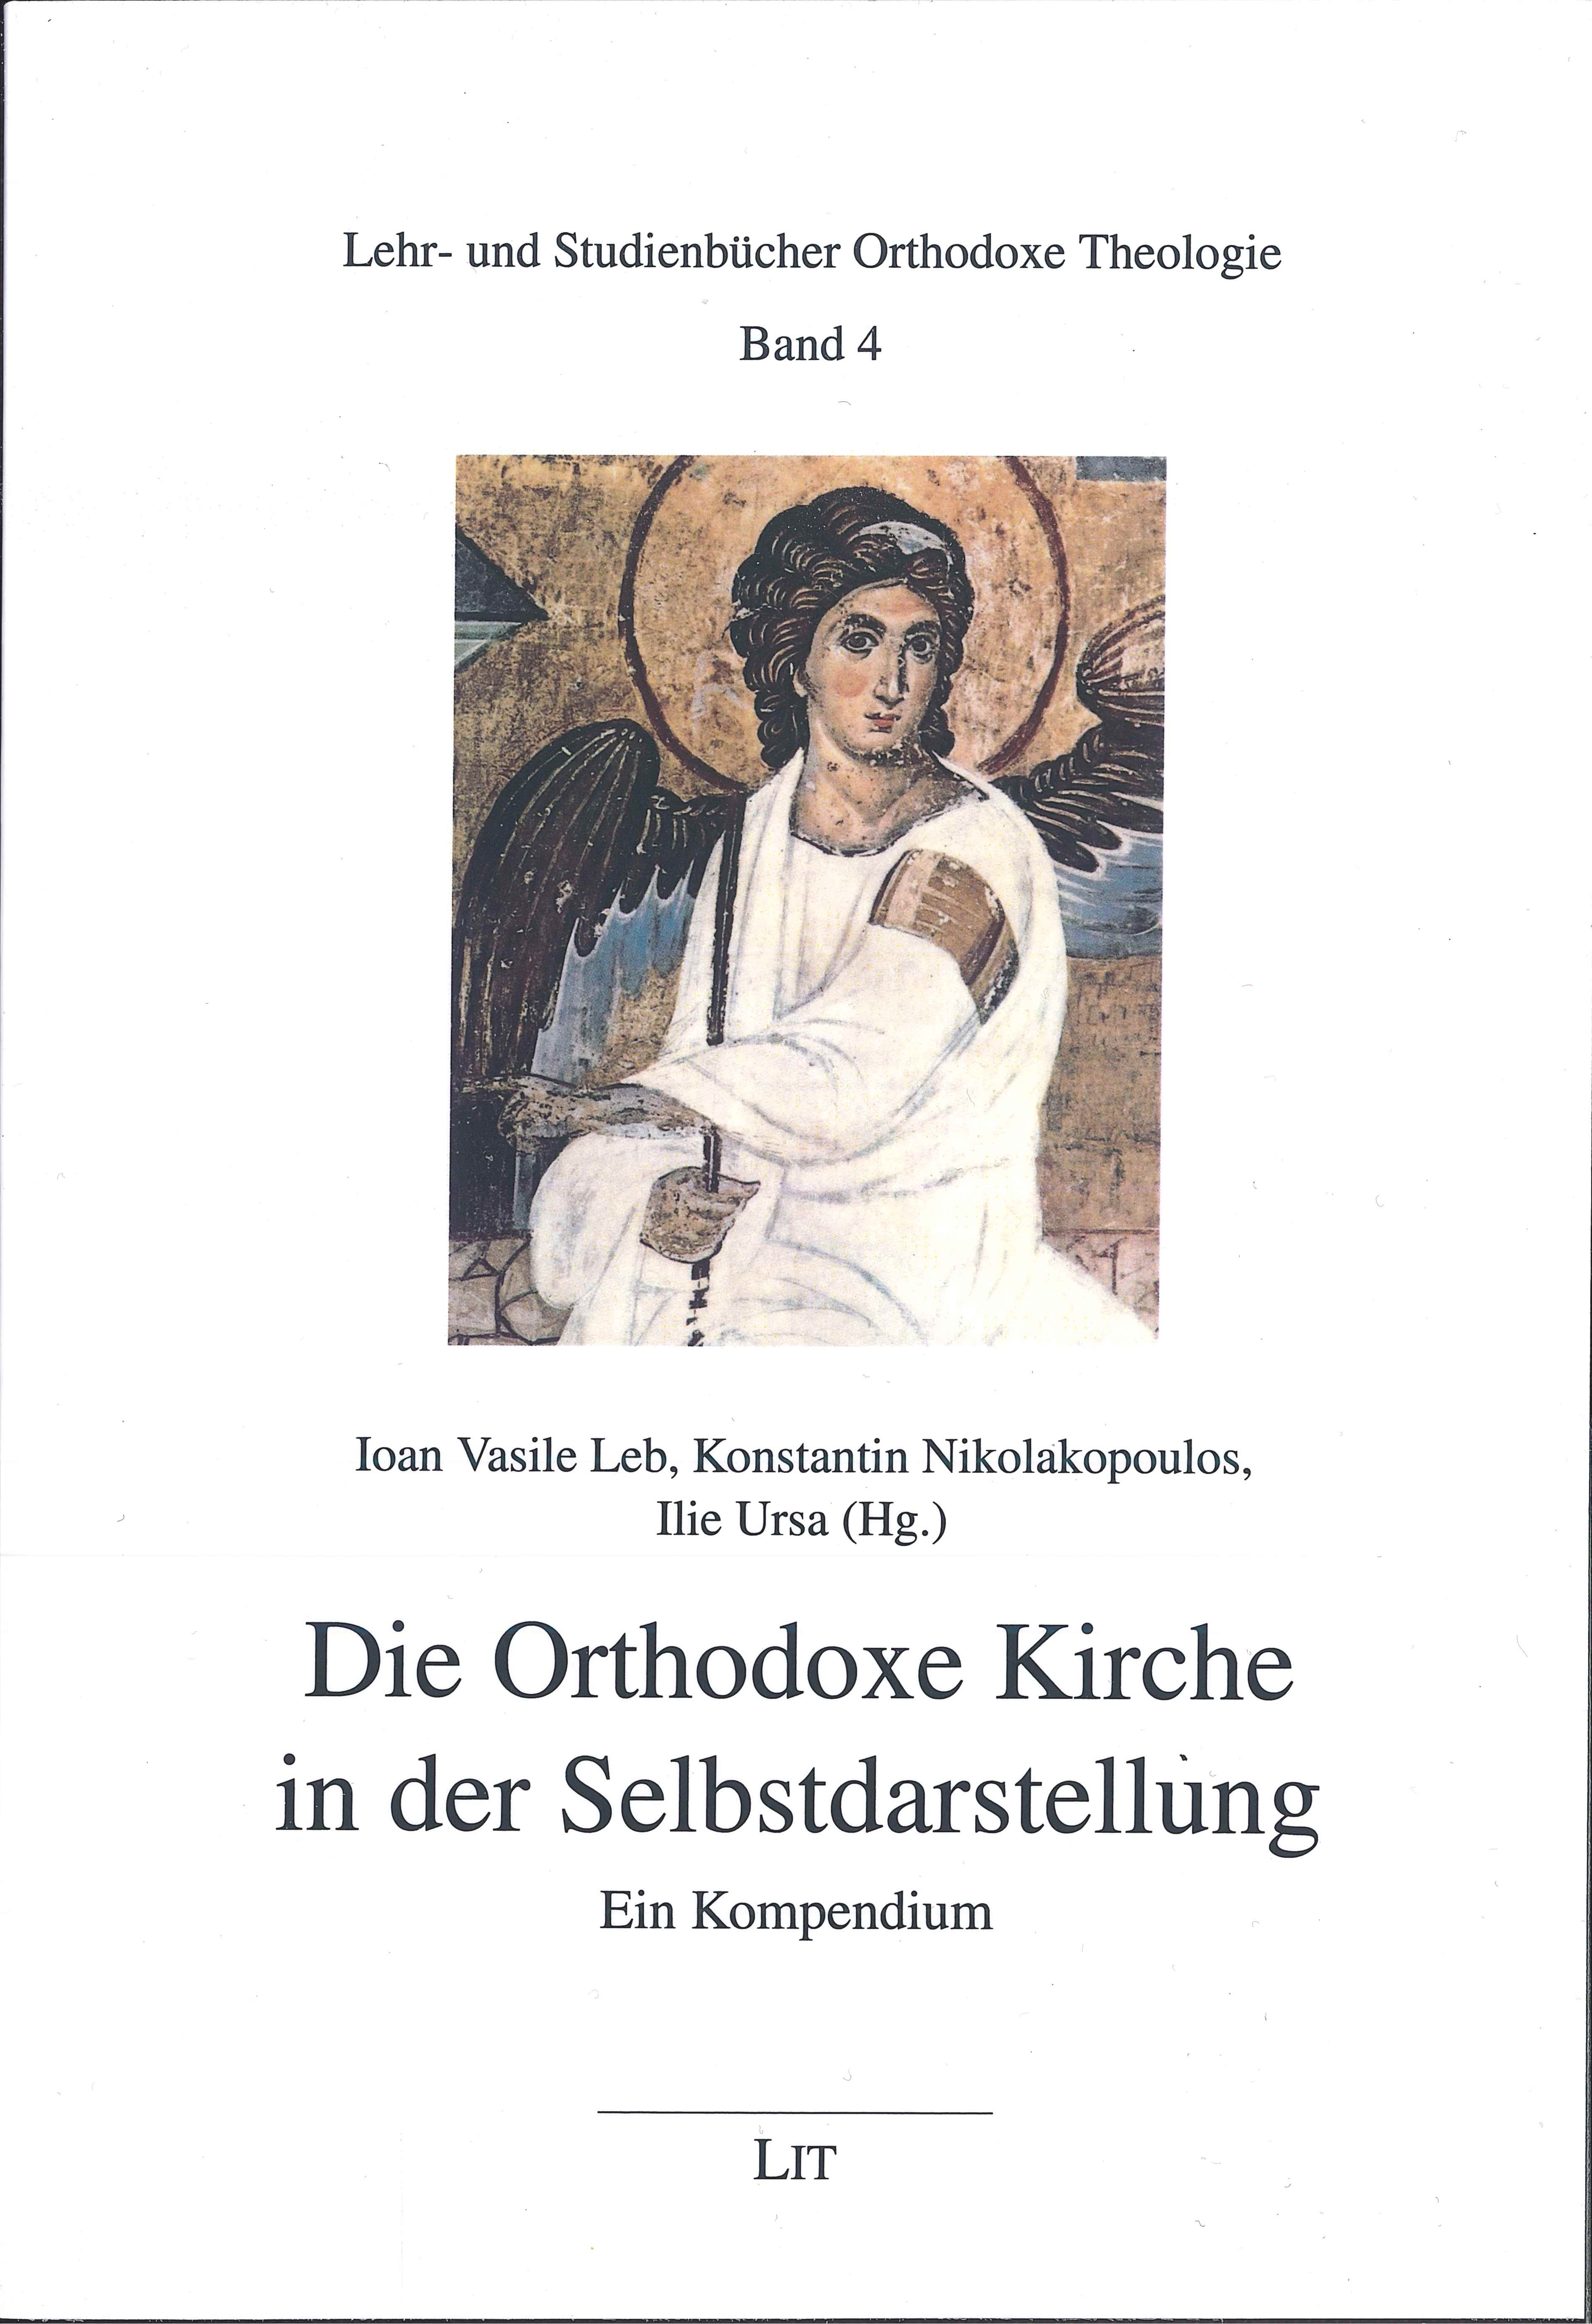 Band 4 der Reihe Lehr- und Studienbücher Orthodoxe Theologie –  Die Orthodoxe Kirche in der Selbstdarstellung 